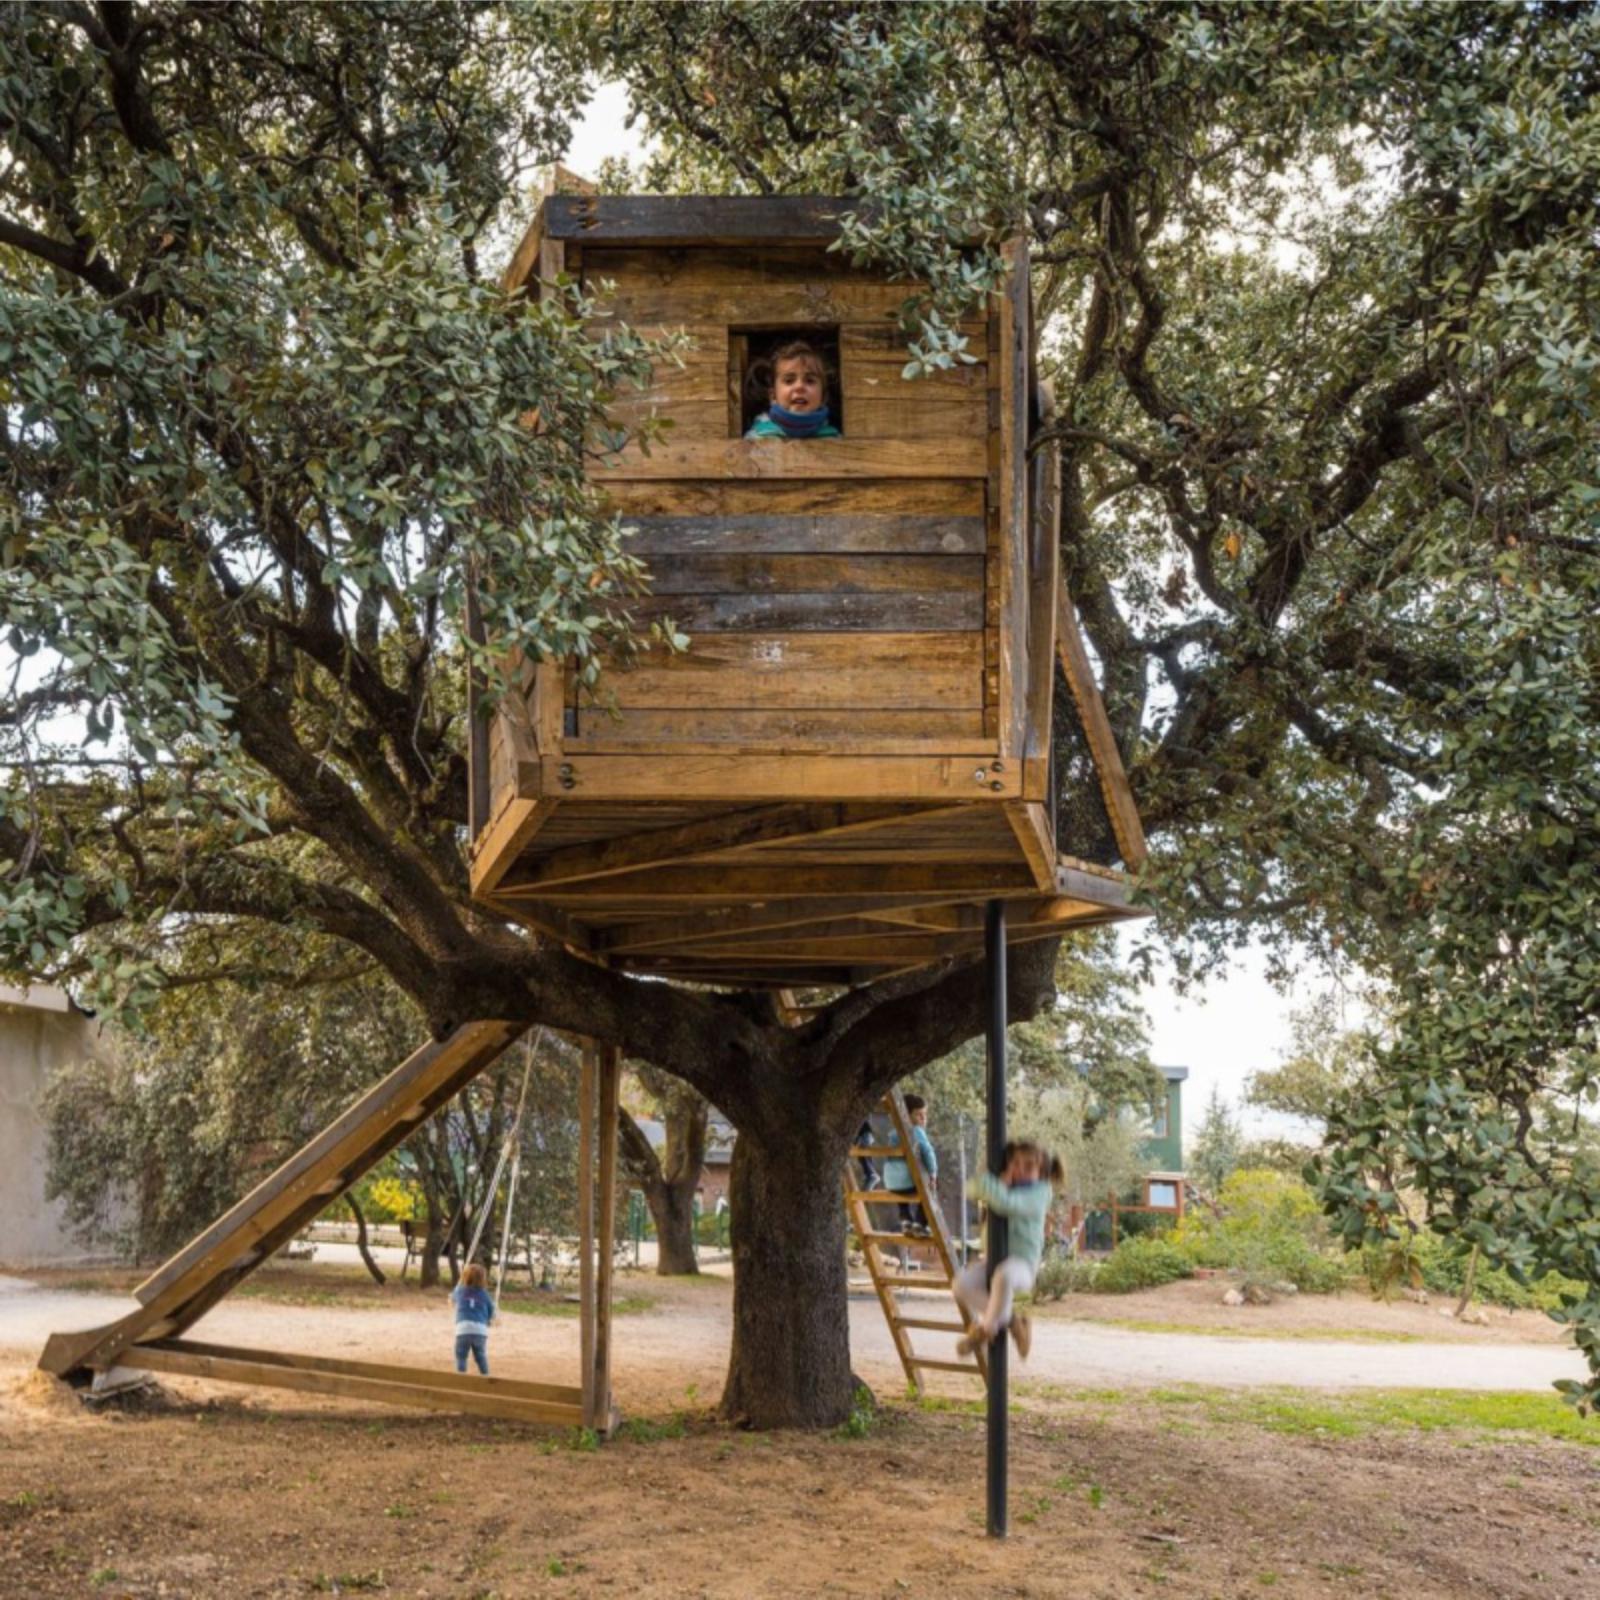 Tree house for children